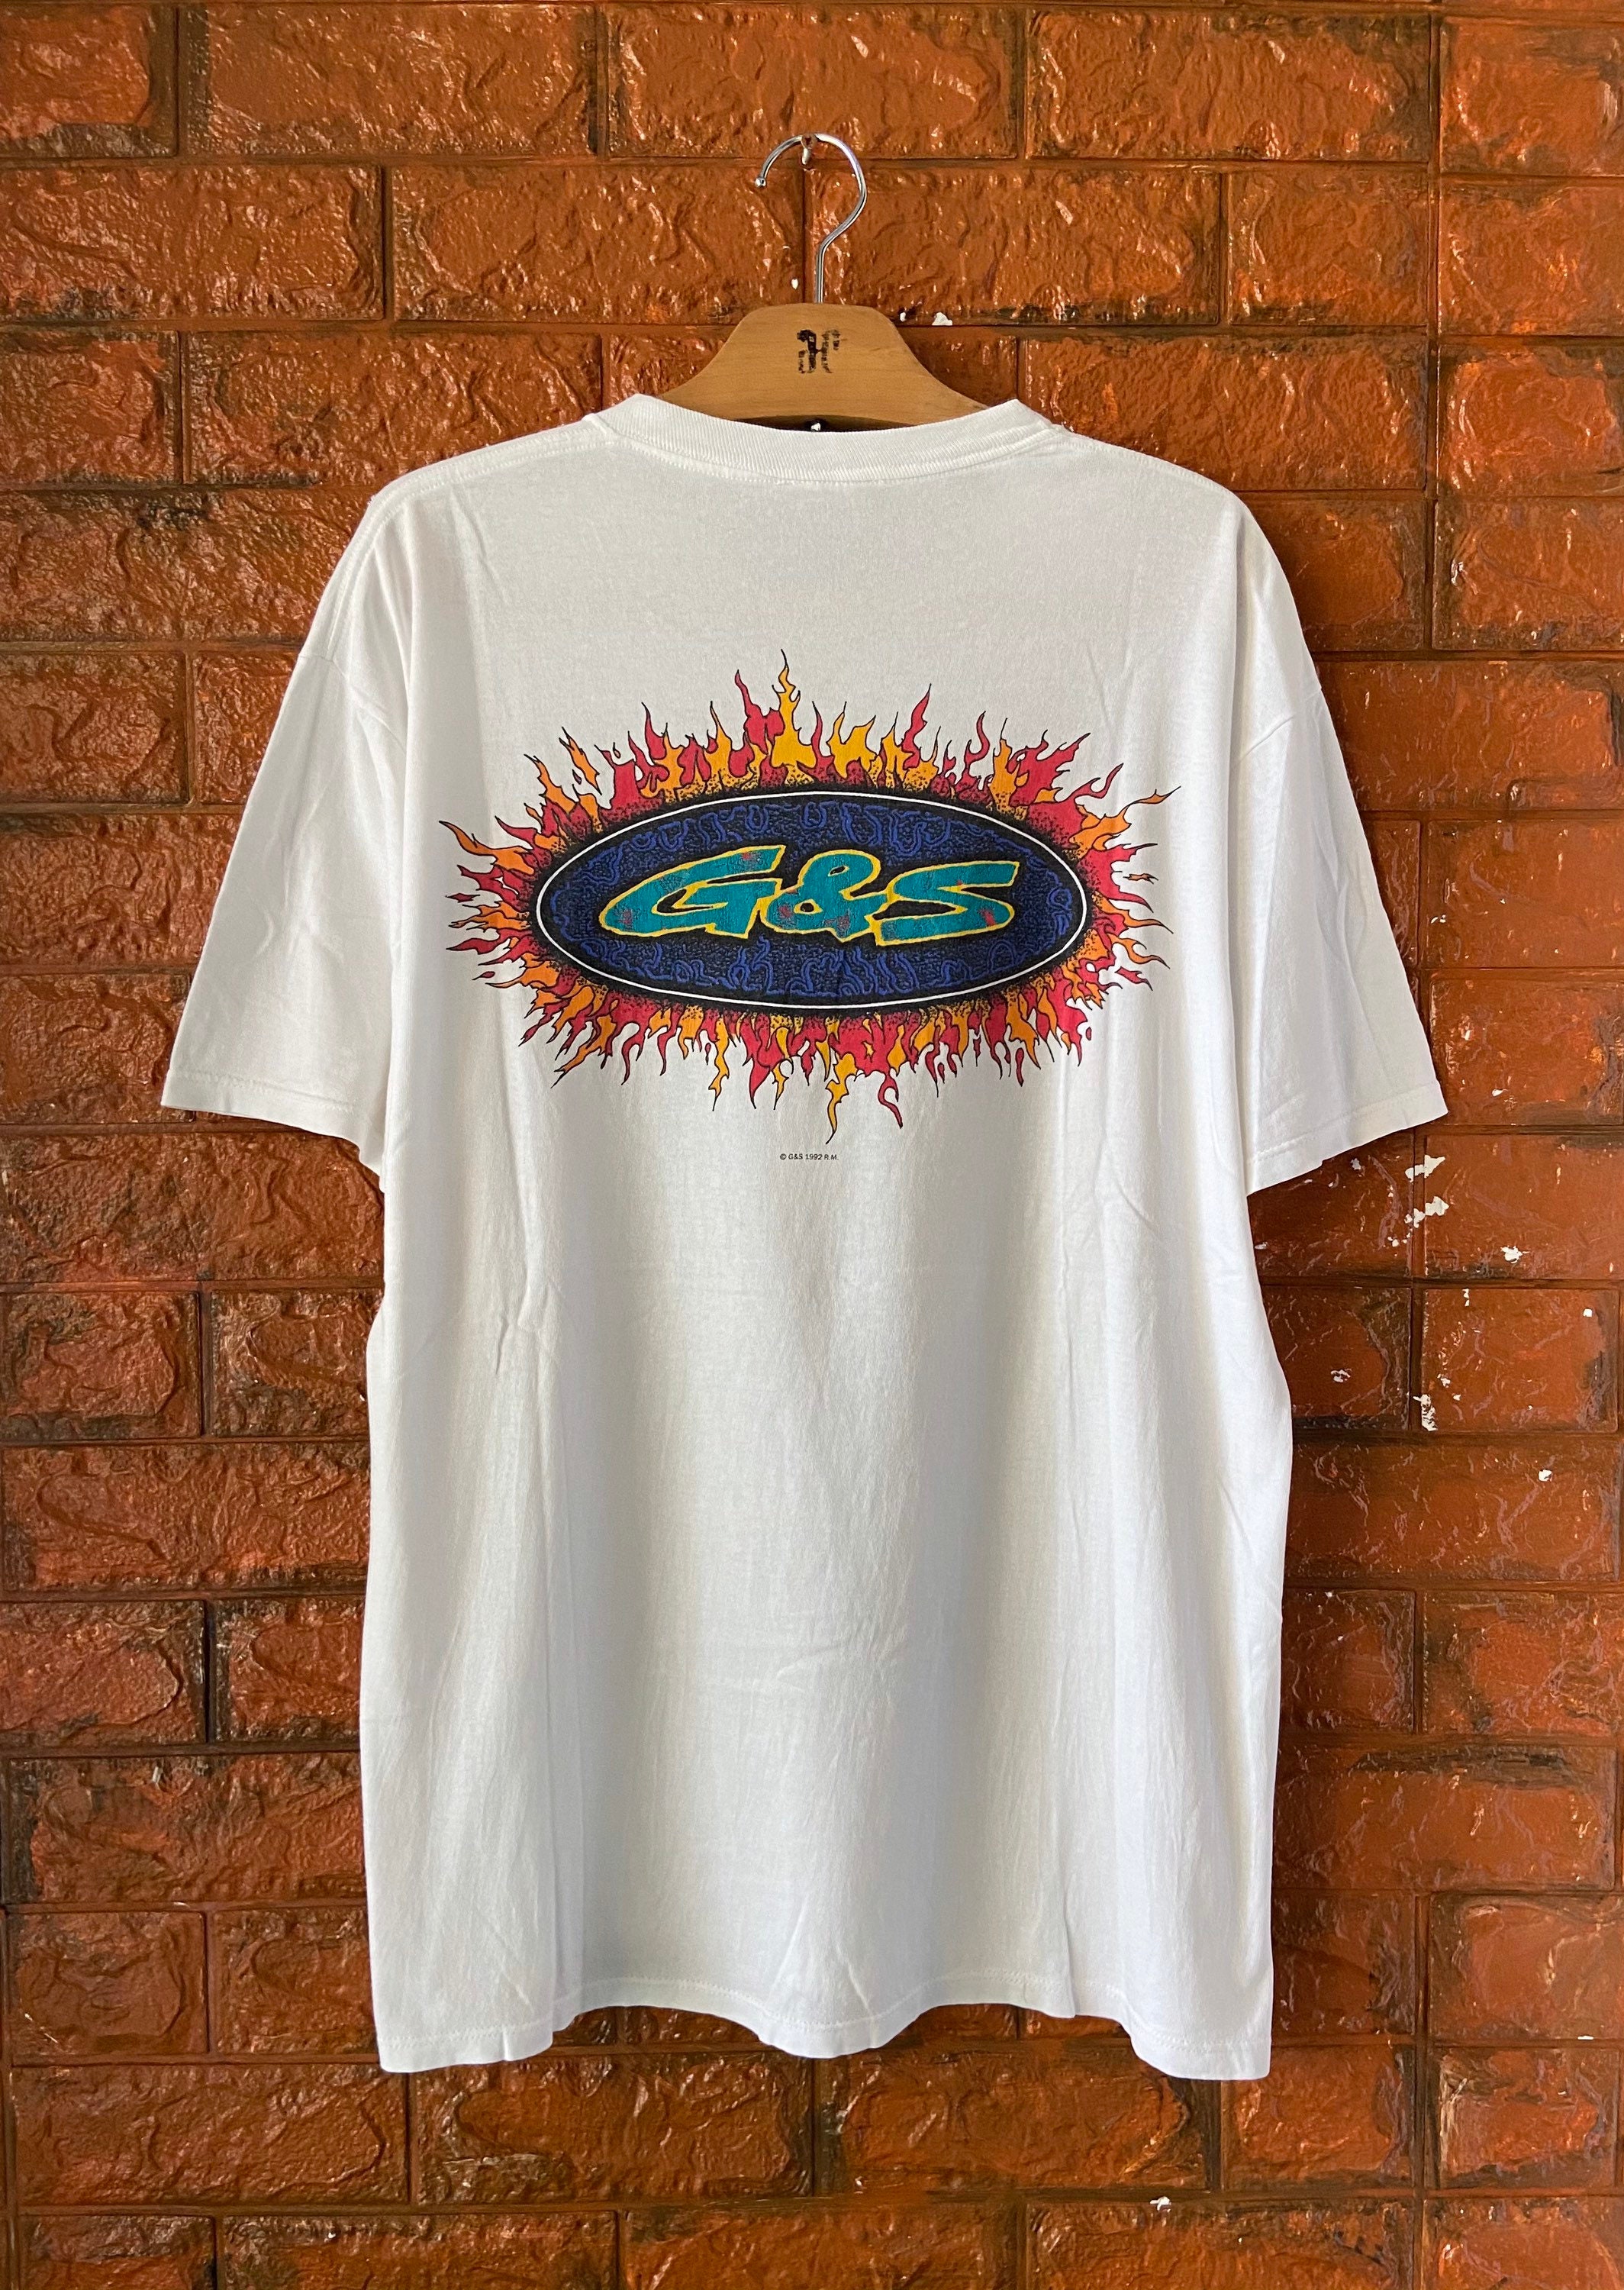 Vintage 90s G&S Gordon Smith Skateboard 1992 T Shirt / - Etsy